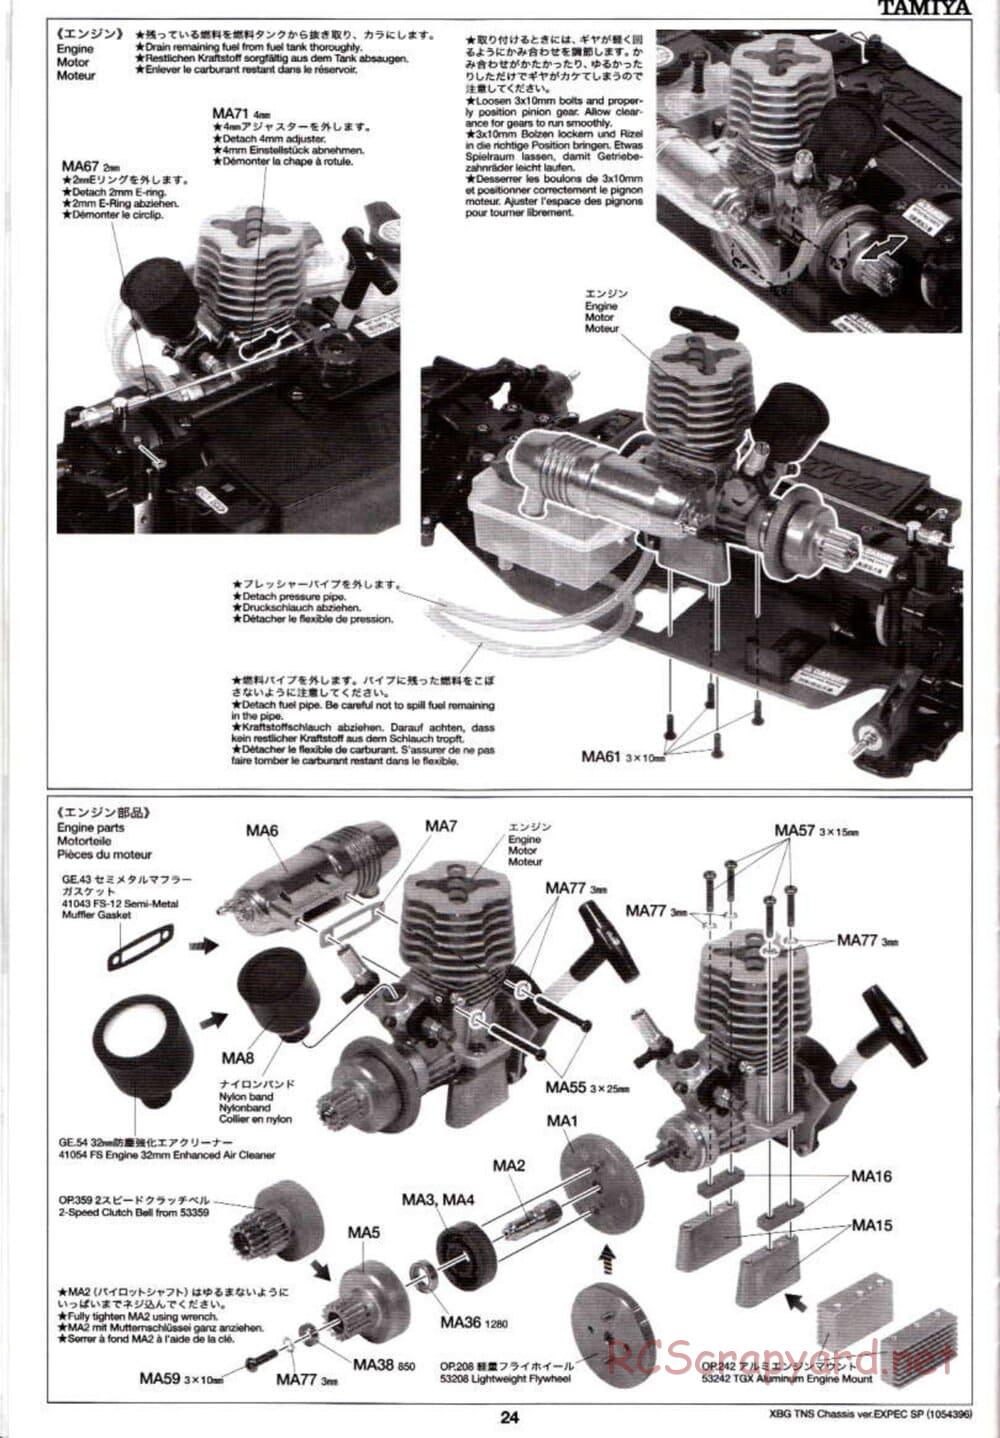 Tamiya - TNS Chassis - Manual - Page 24